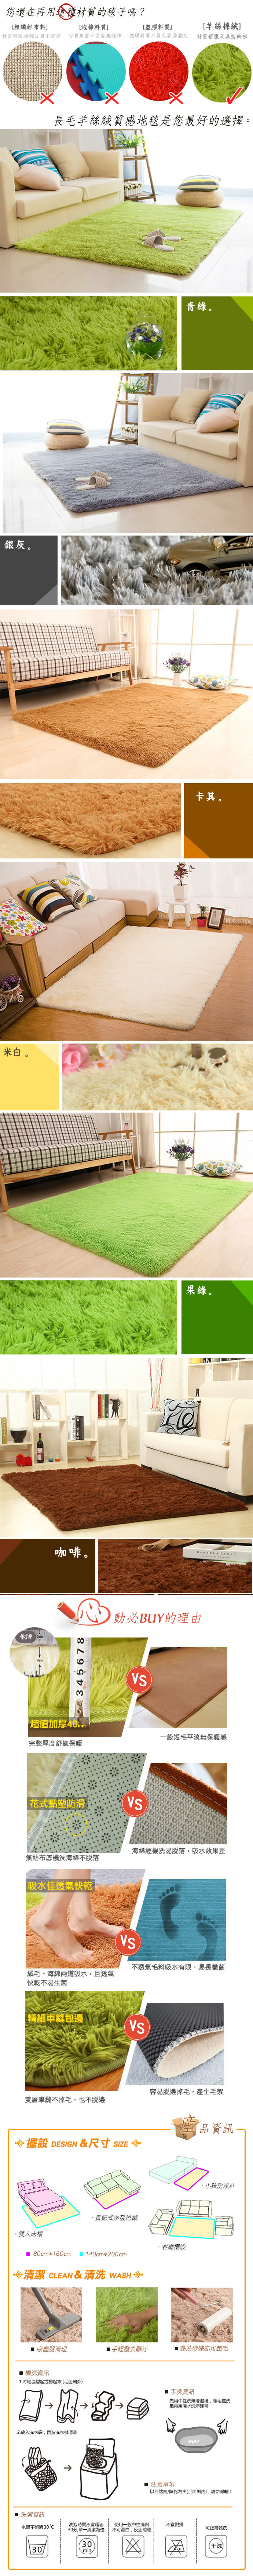 【幸福揚邑】舒壓長毛羊絲絨超軟防滑吸水地墊地毯-青綠(140x200cm)